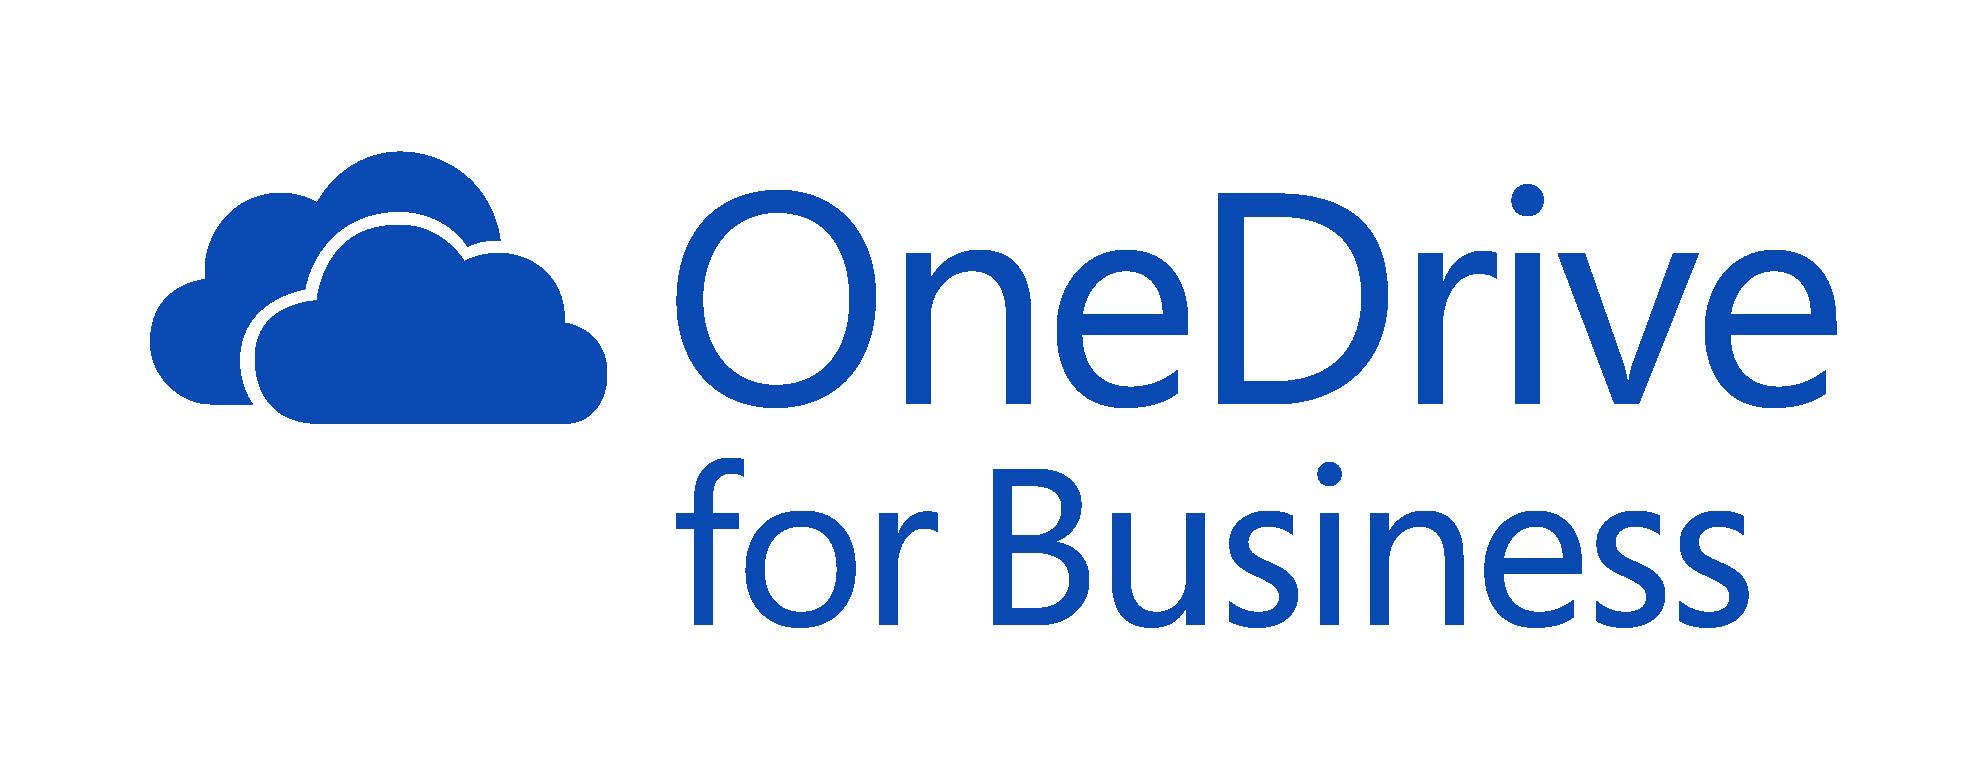 Hướng dẫn chia sẻ tập tin với tài khoản OneDrive for Business